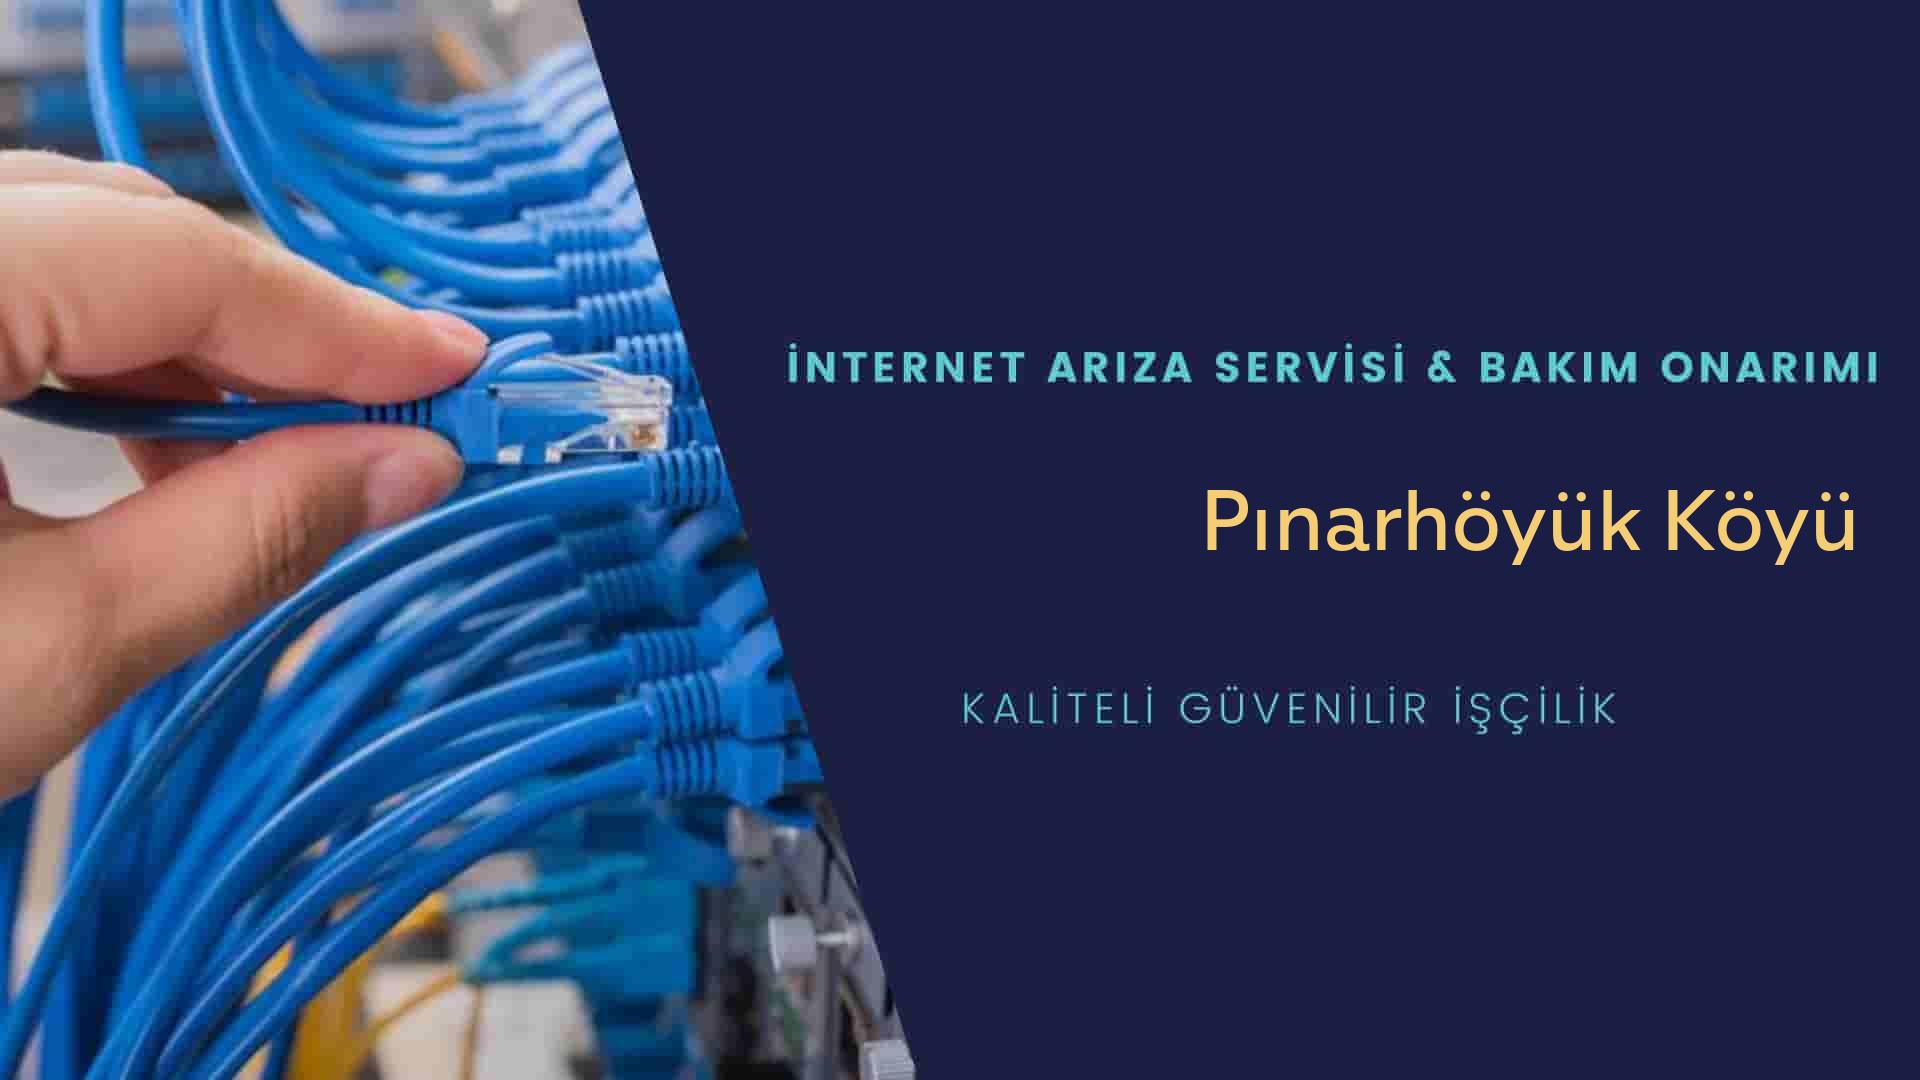 Pınarhöyük Köyü internet kablosu çekimi yapan yerler veya elektrikçiler mi? arıyorsunuz doğru yerdesiniz o zaman sizlere 7/24 yardımcı olacak profesyonel ustalarımız bir telefon kadar yakındır size.